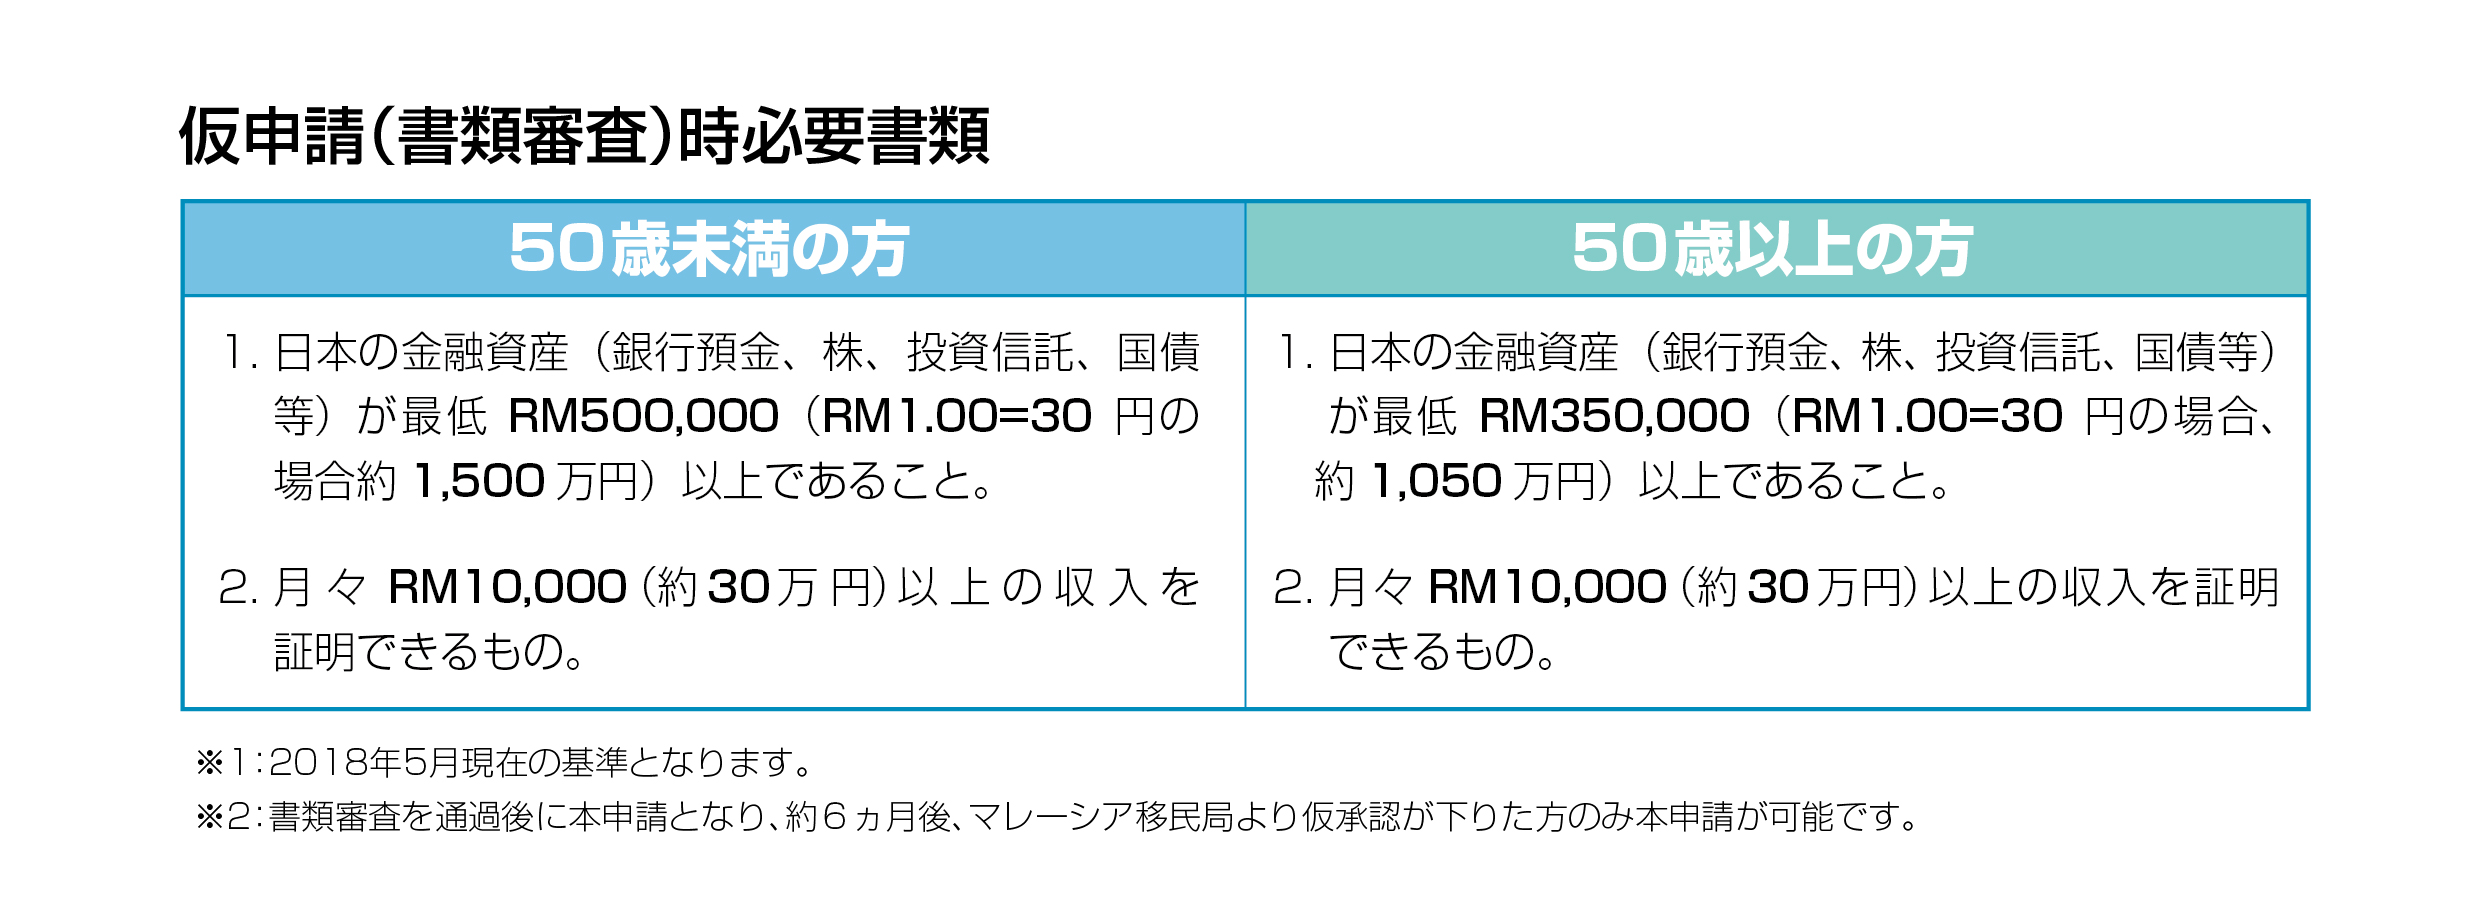 2020 JVV日本官網-MM2H申請流程(日)-04